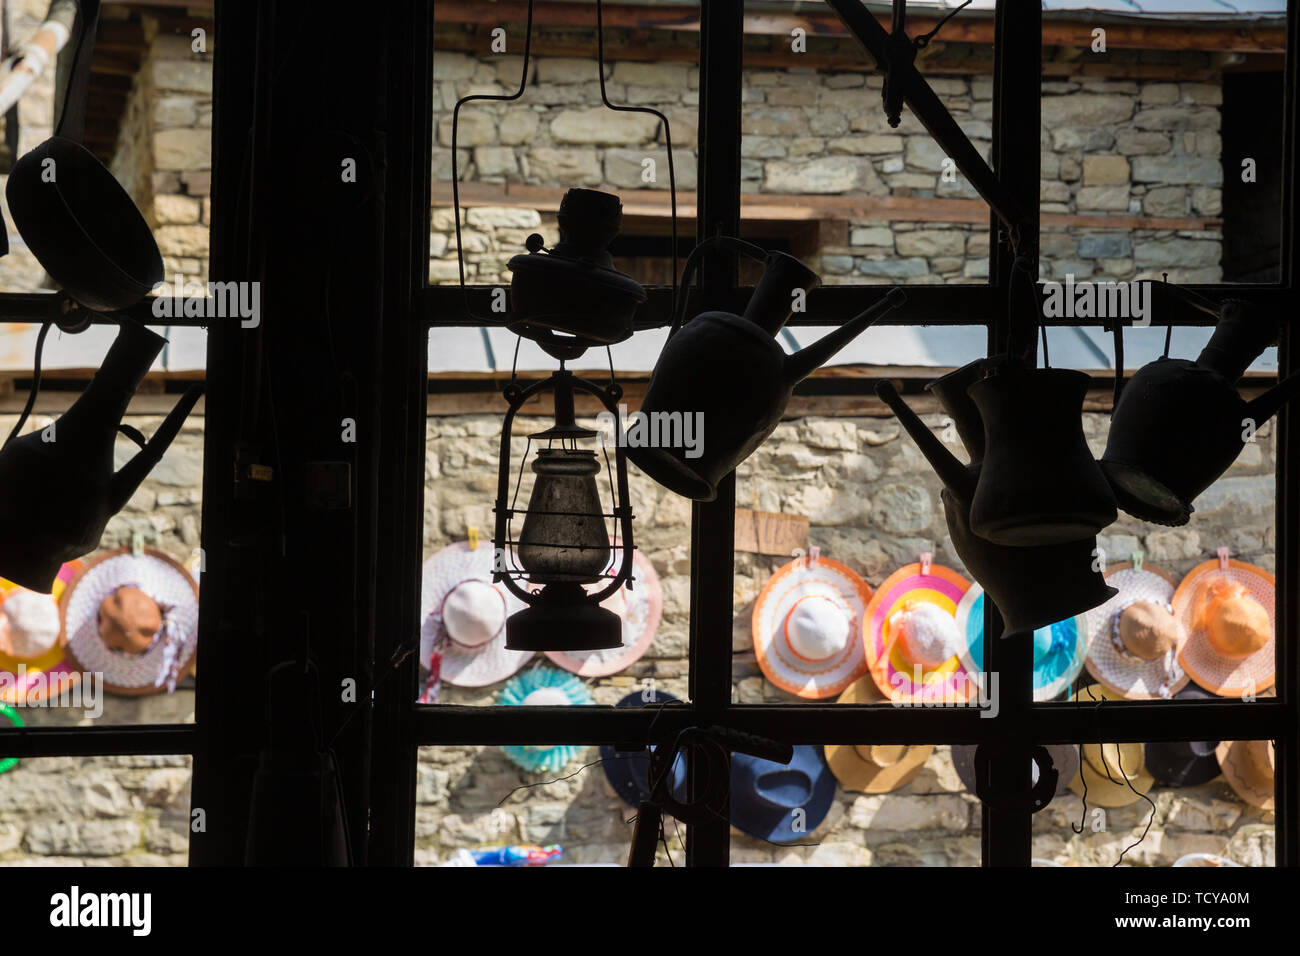 Atelier chaudronnier sur cuivre fait main et choses, Lahich, Azerbaïdjan. Intérieur de chaudronnier atelier dans le village. Banque D'Images